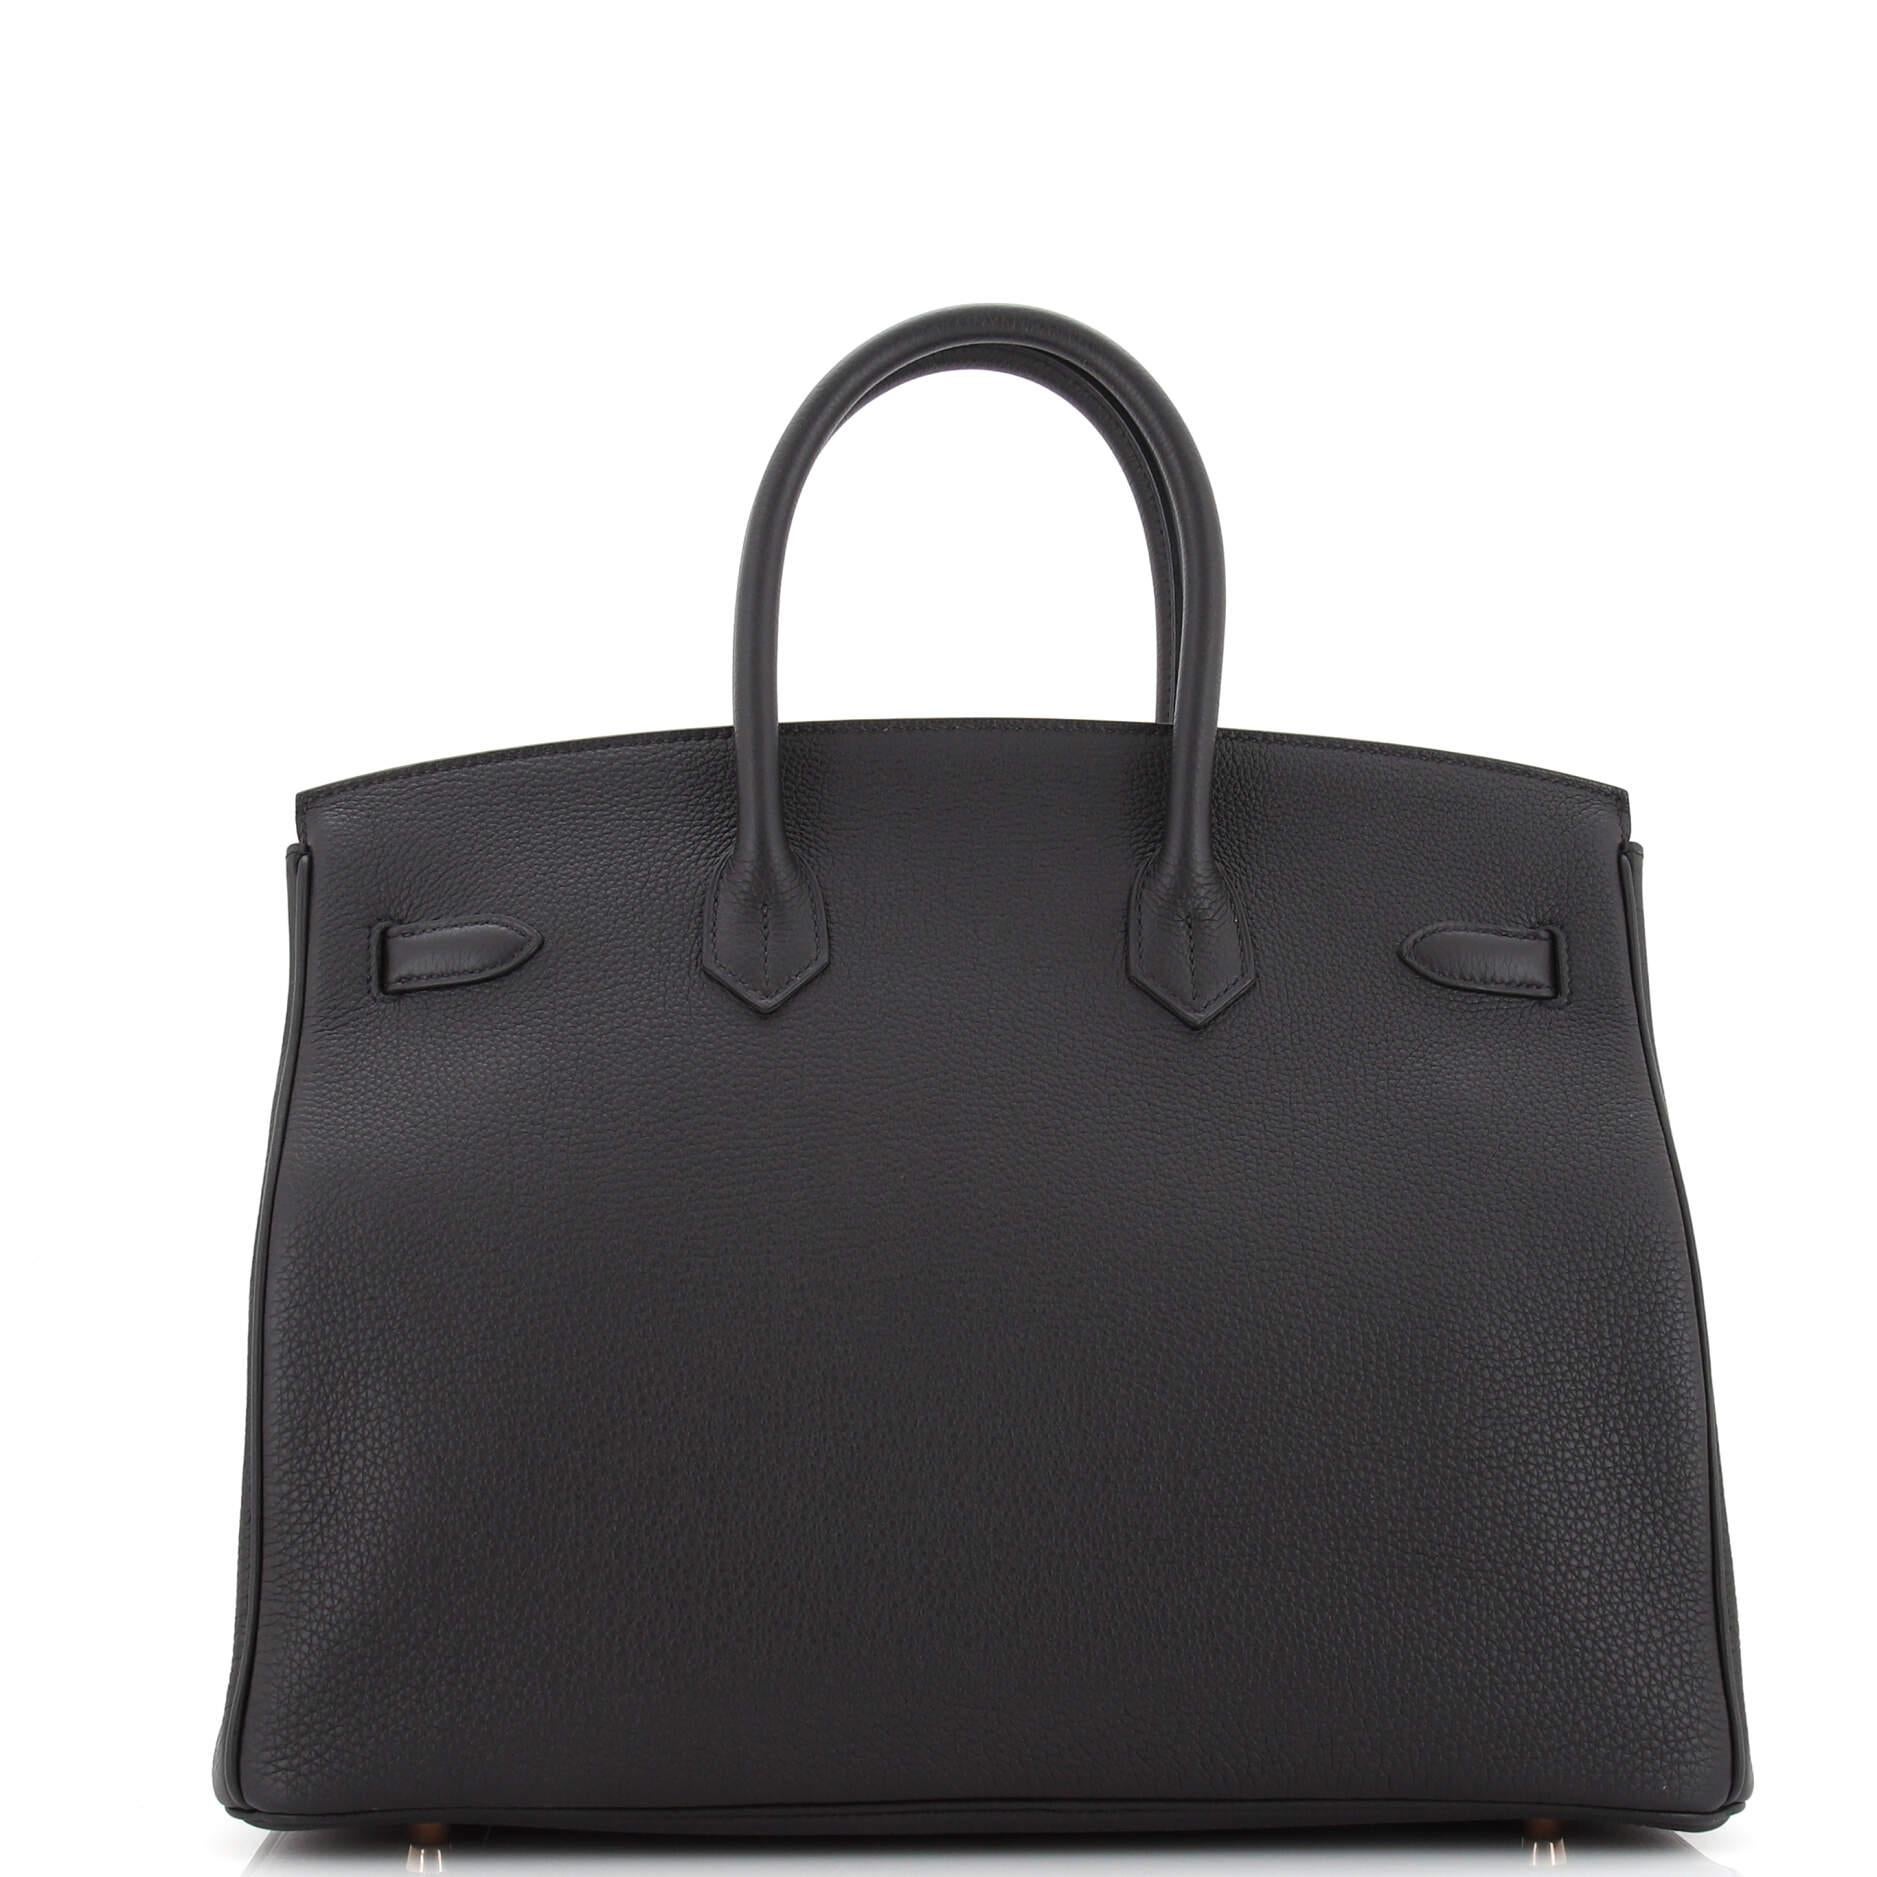 Hermes Birkin Handbag Noir Togo with Rose Gold Hardware 35 1